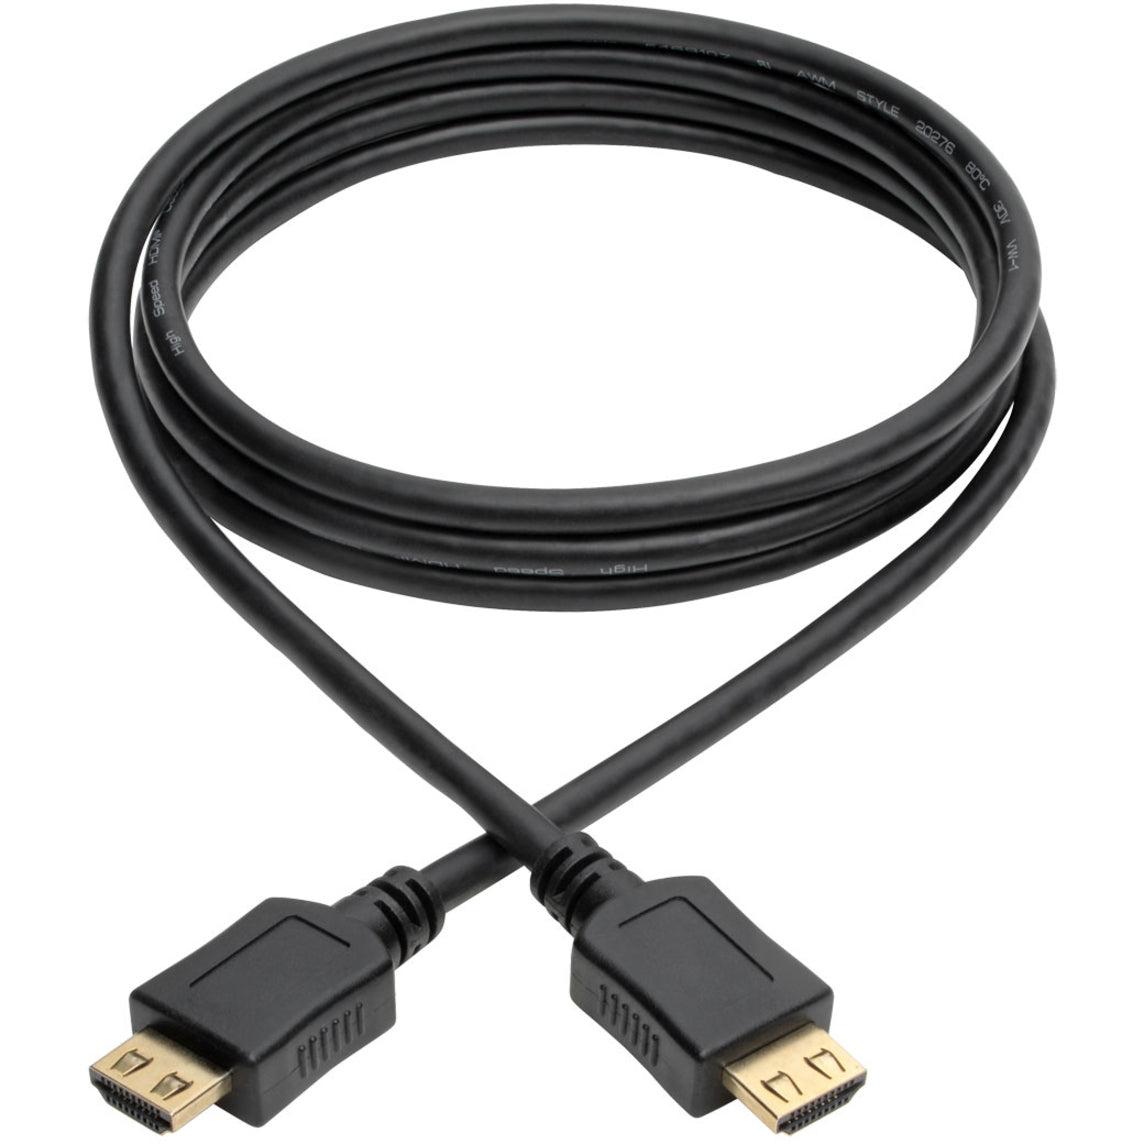 Tripp Lite P568-006-BK-GRP High-Speed HDMI Cable 6 ft. with Gripping Connectors - 4K Black  Tripp Lite P568-006-BK-GRP Câble HDMI haute vitesse 6 pi avec connecteurs grip - 4K noir